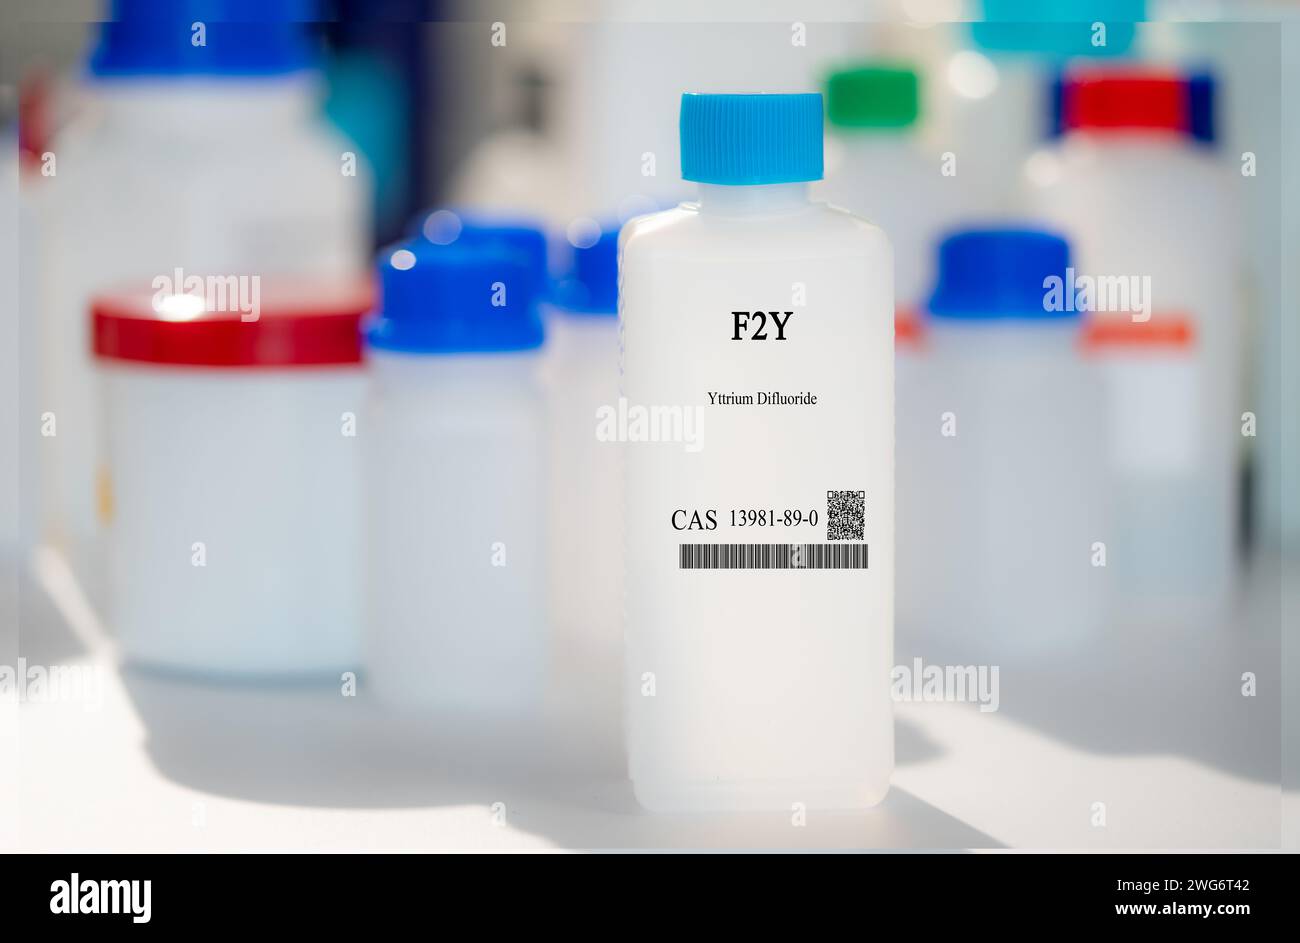 F2Y-Yttriumdifluorid CAS 13981-89-0 chemische Substanz in weißer Kunststoffverpackung Stockfoto